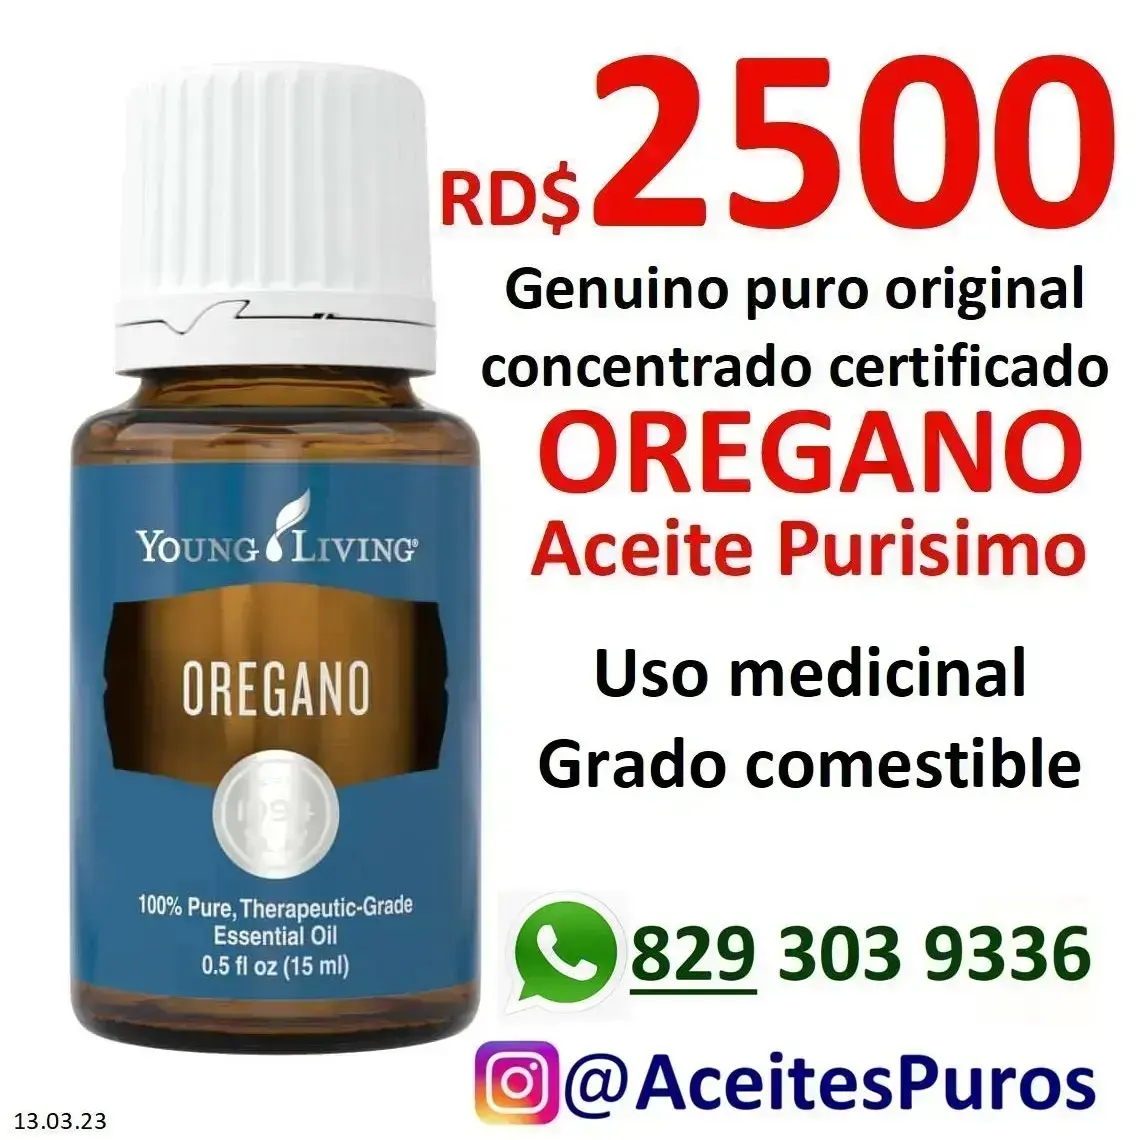 Aceite de ORÉGANO puro original medicinal comestible  Foto 7156950-5.jpg